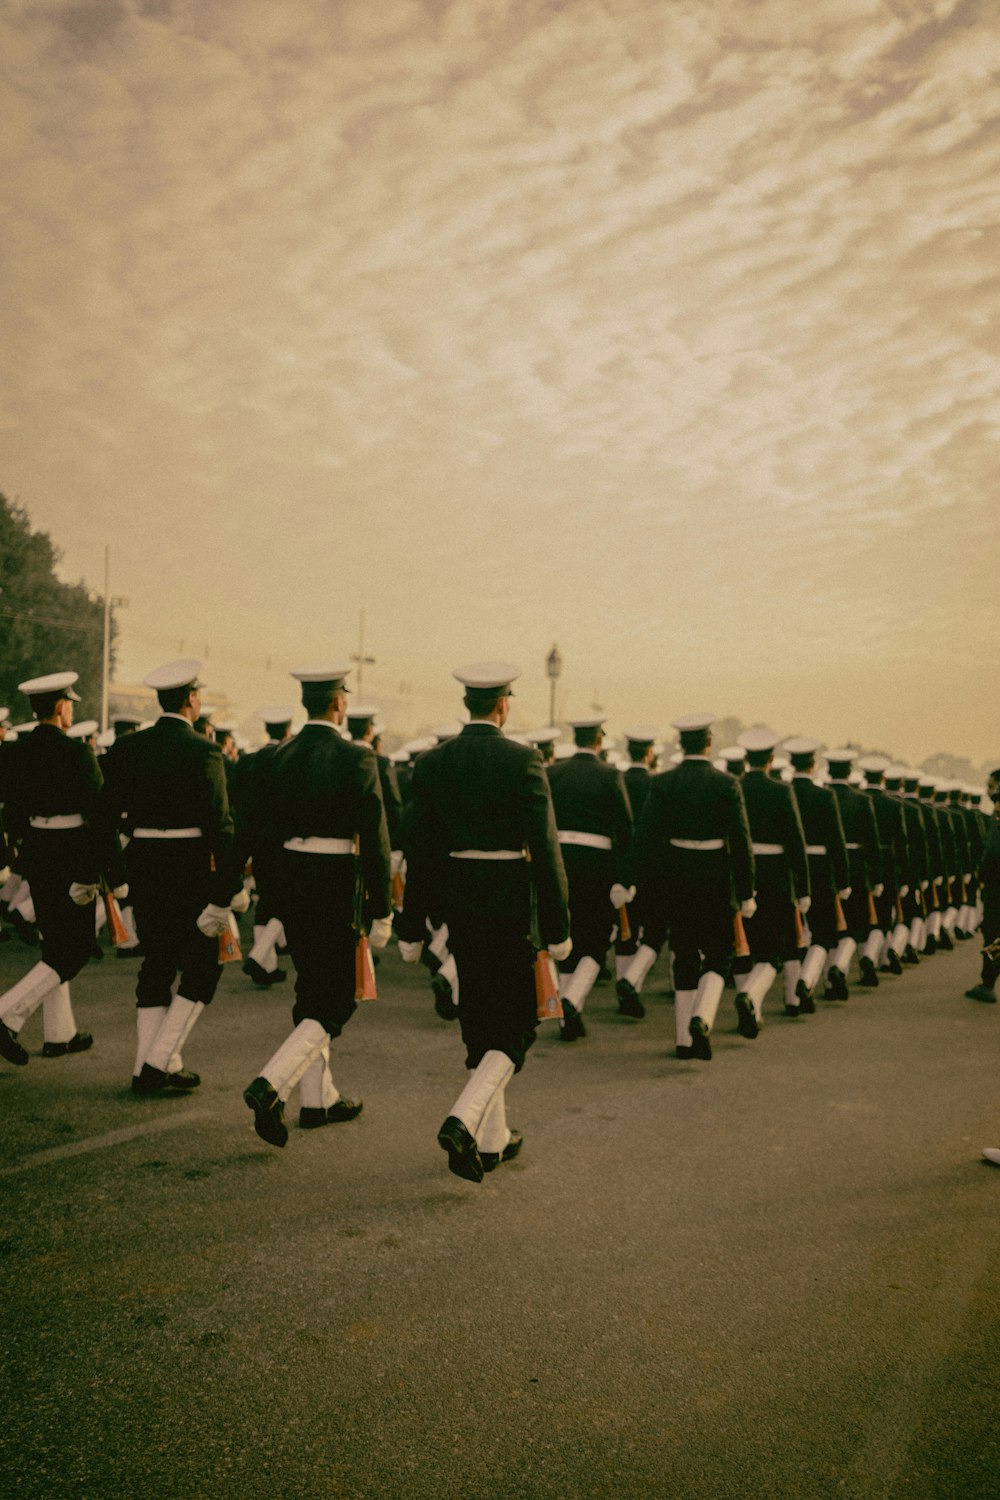 Personas con uniforme de cadete caminando en fila